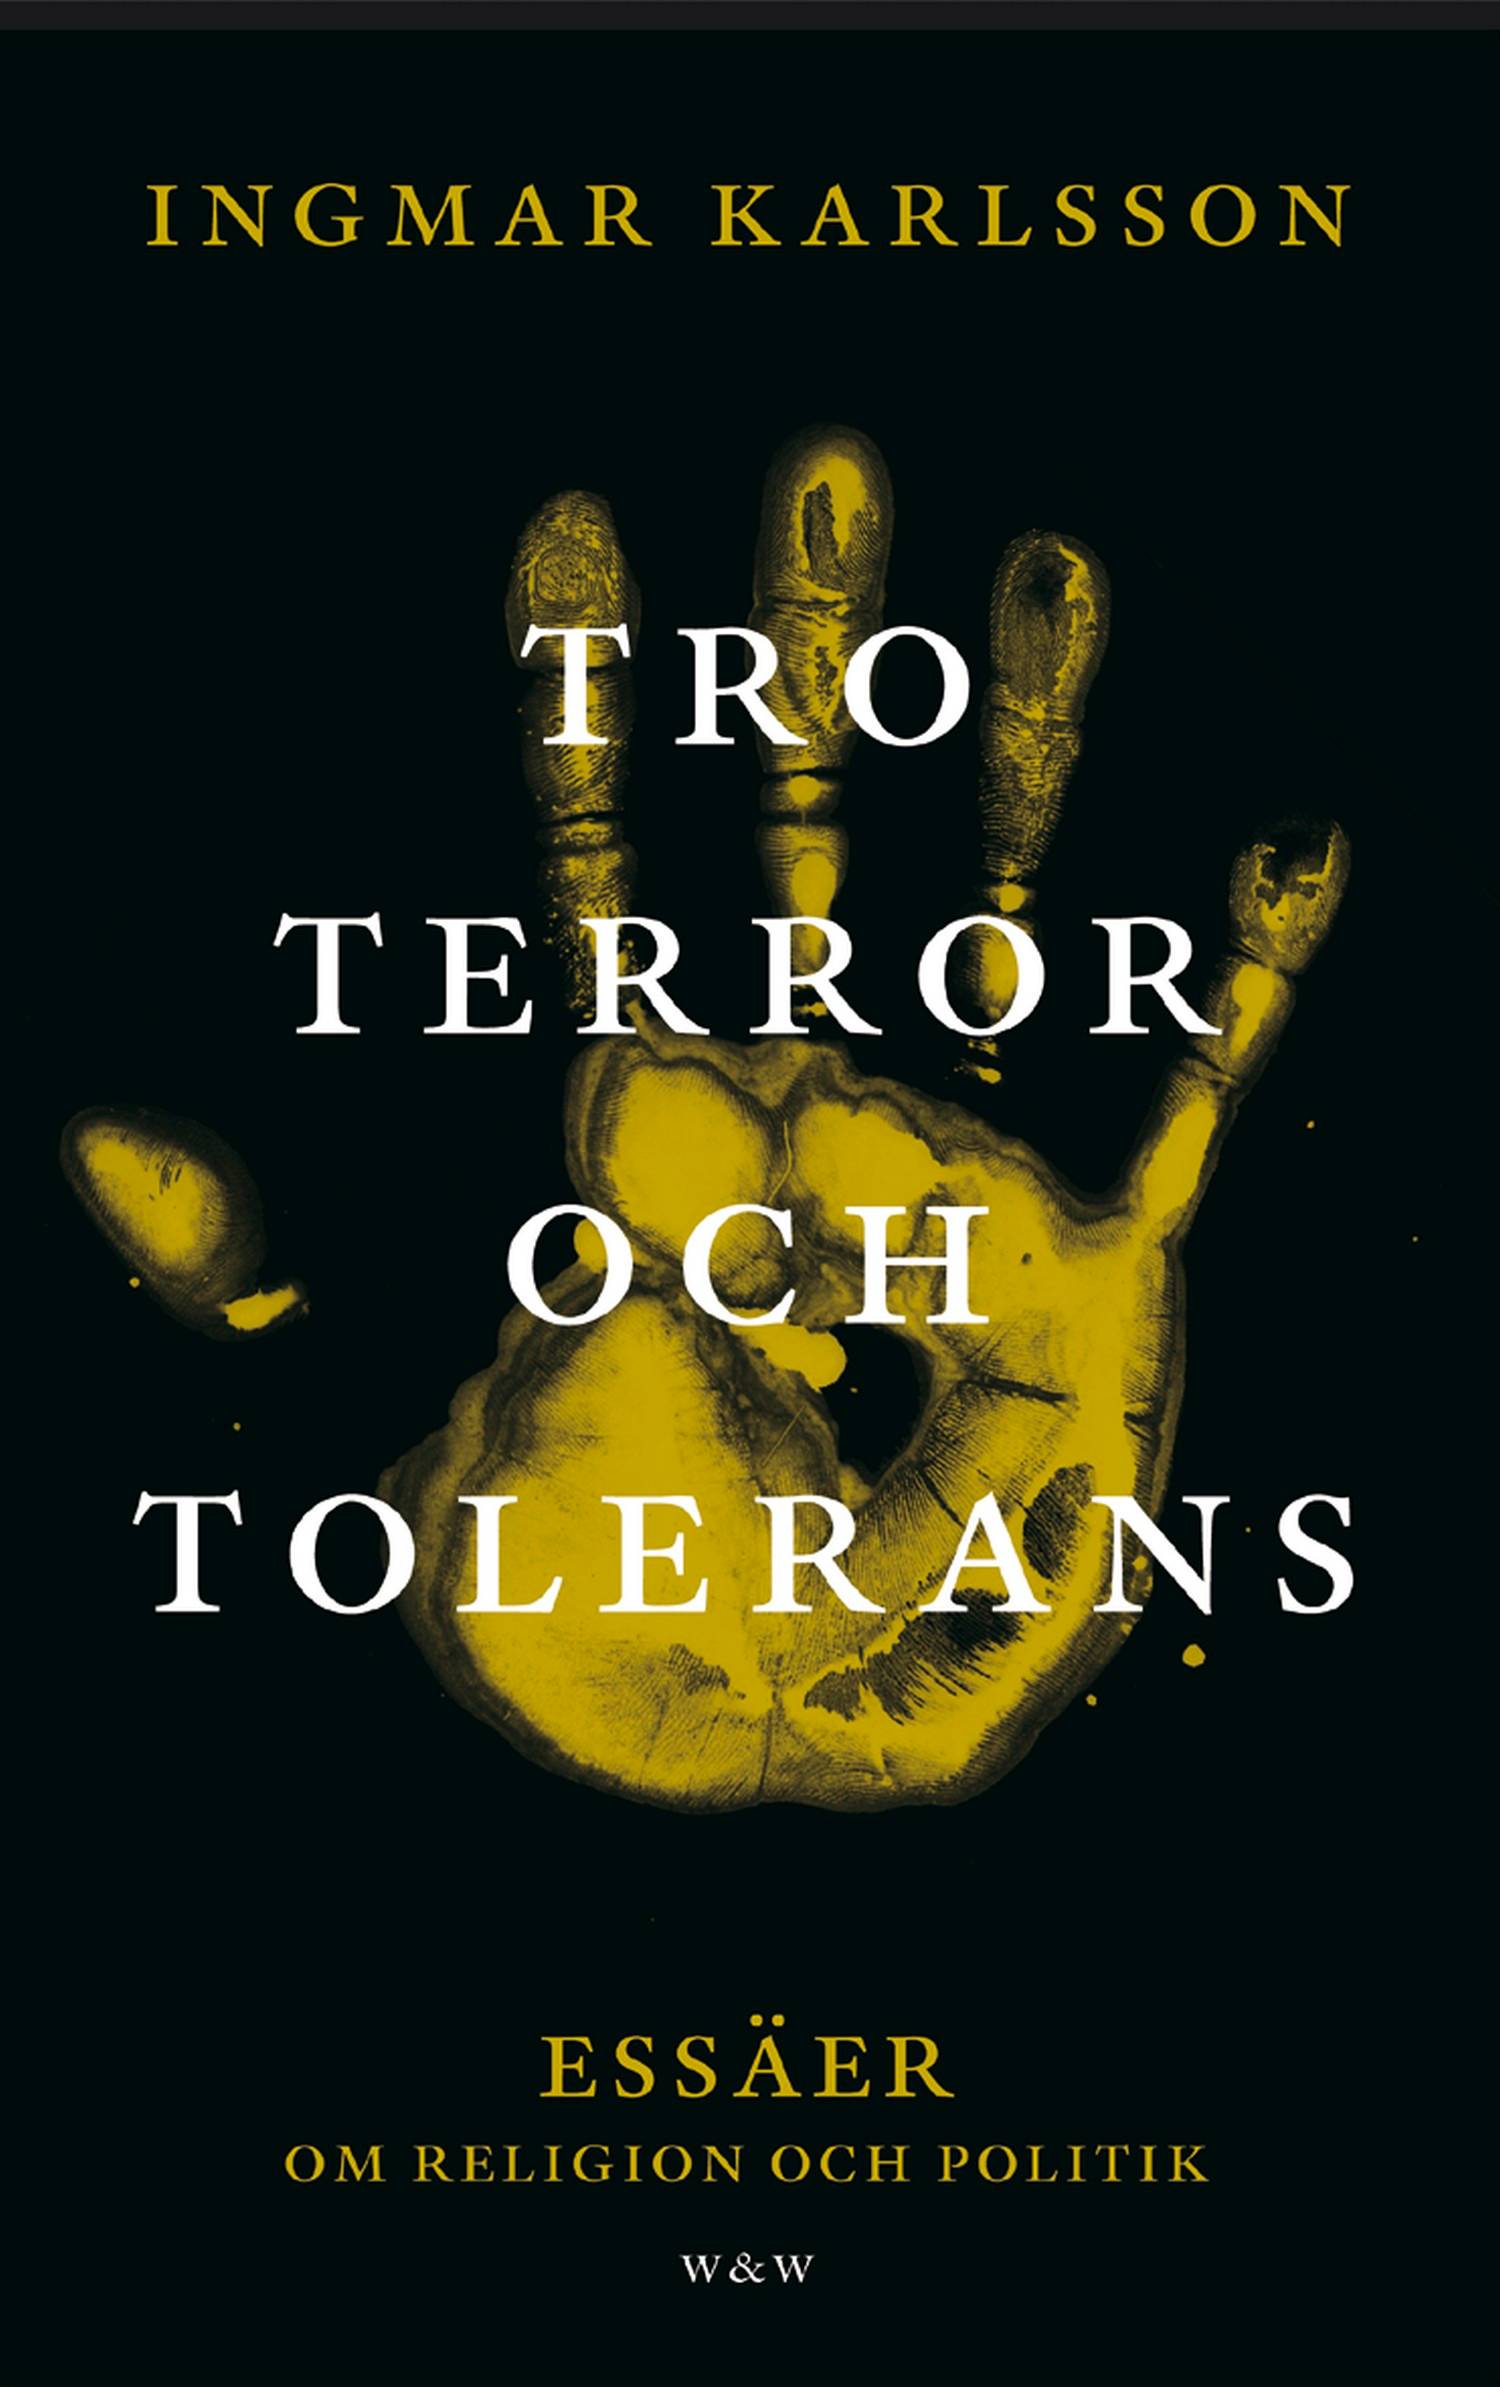 Tro, terror och tolerans : essäer om religion och politik